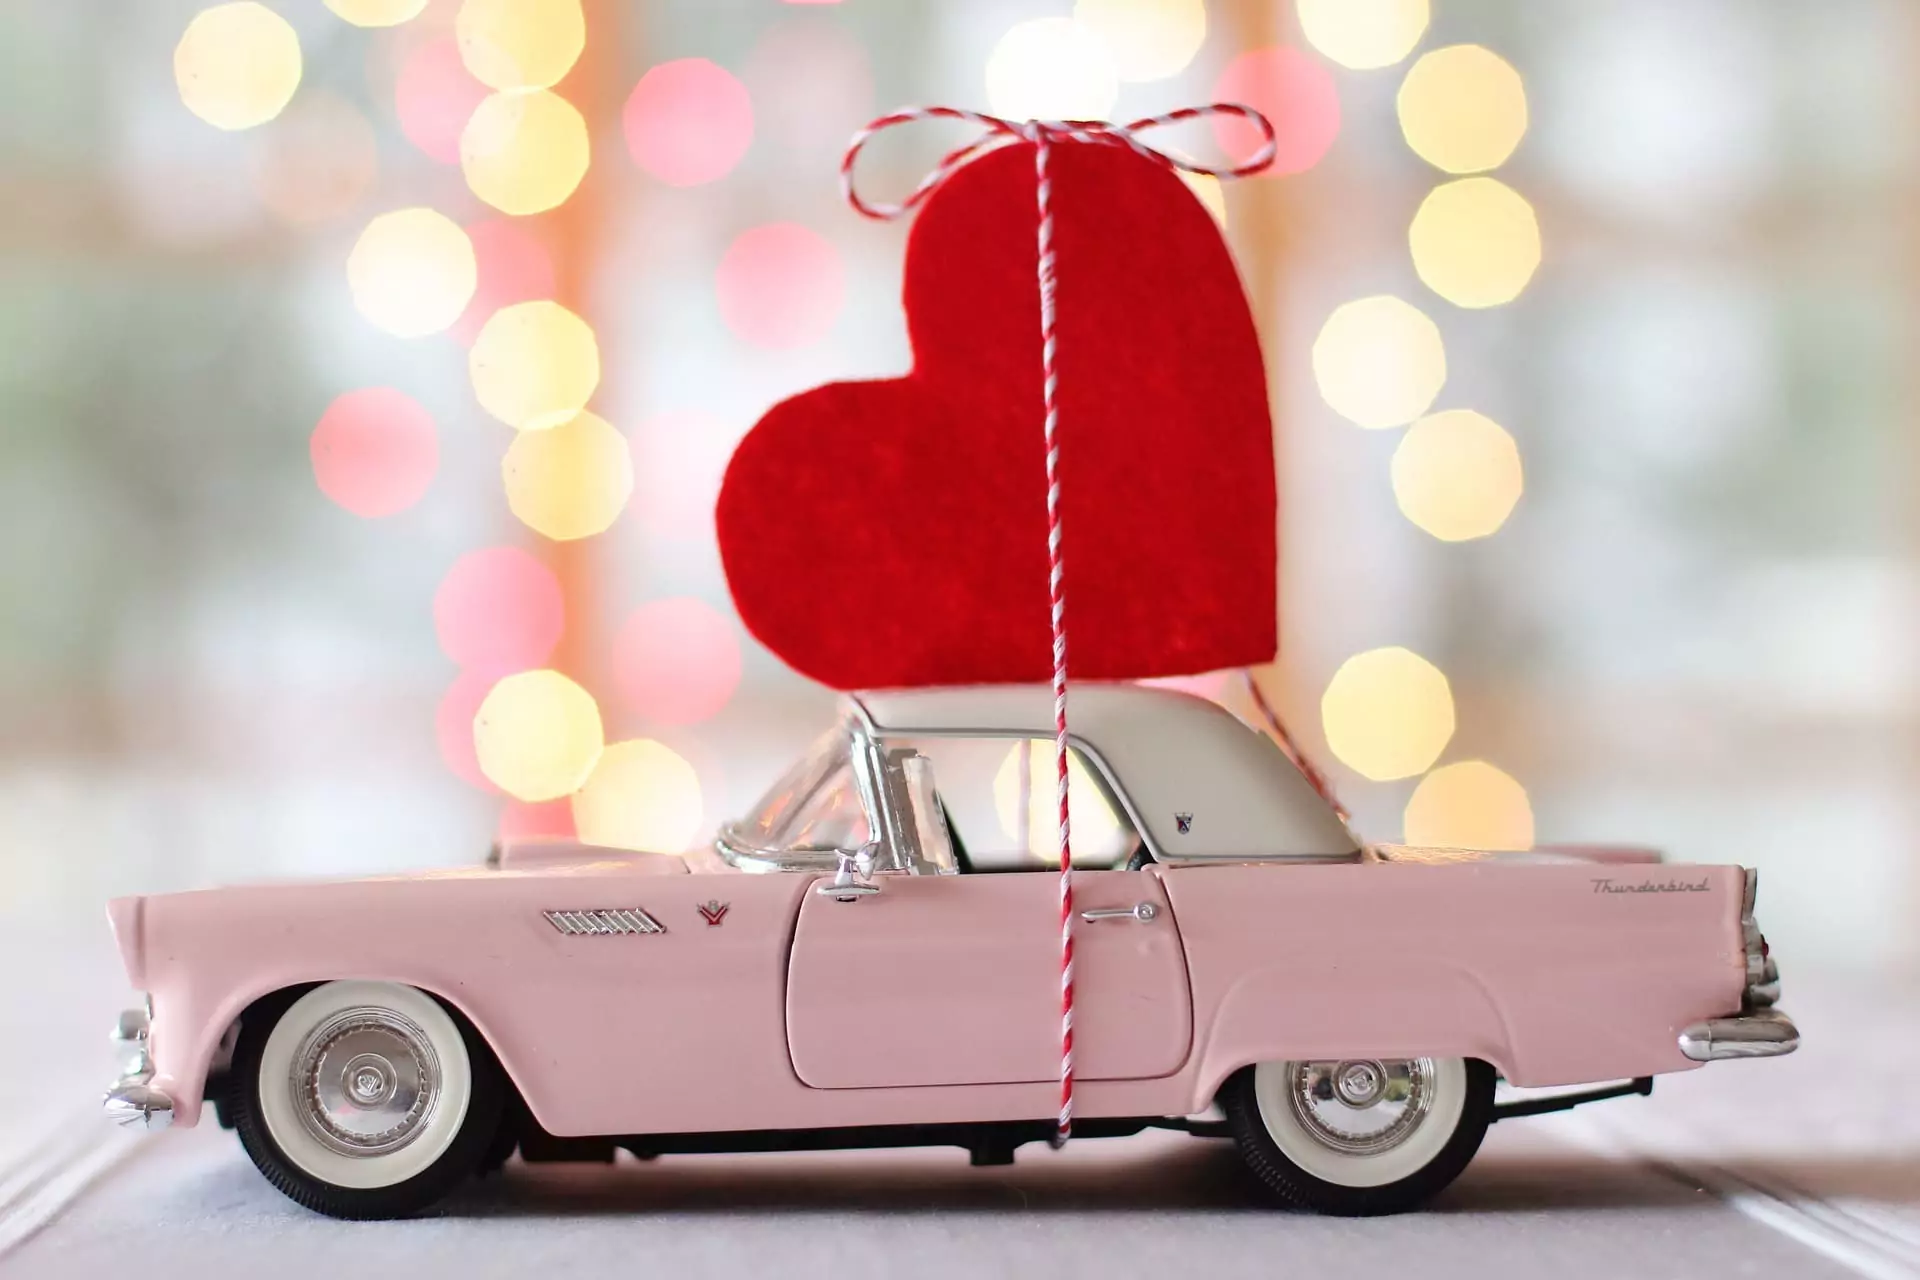 День святого Валентина автоманьяков. 5 идей для Дня святого Валентина в машине